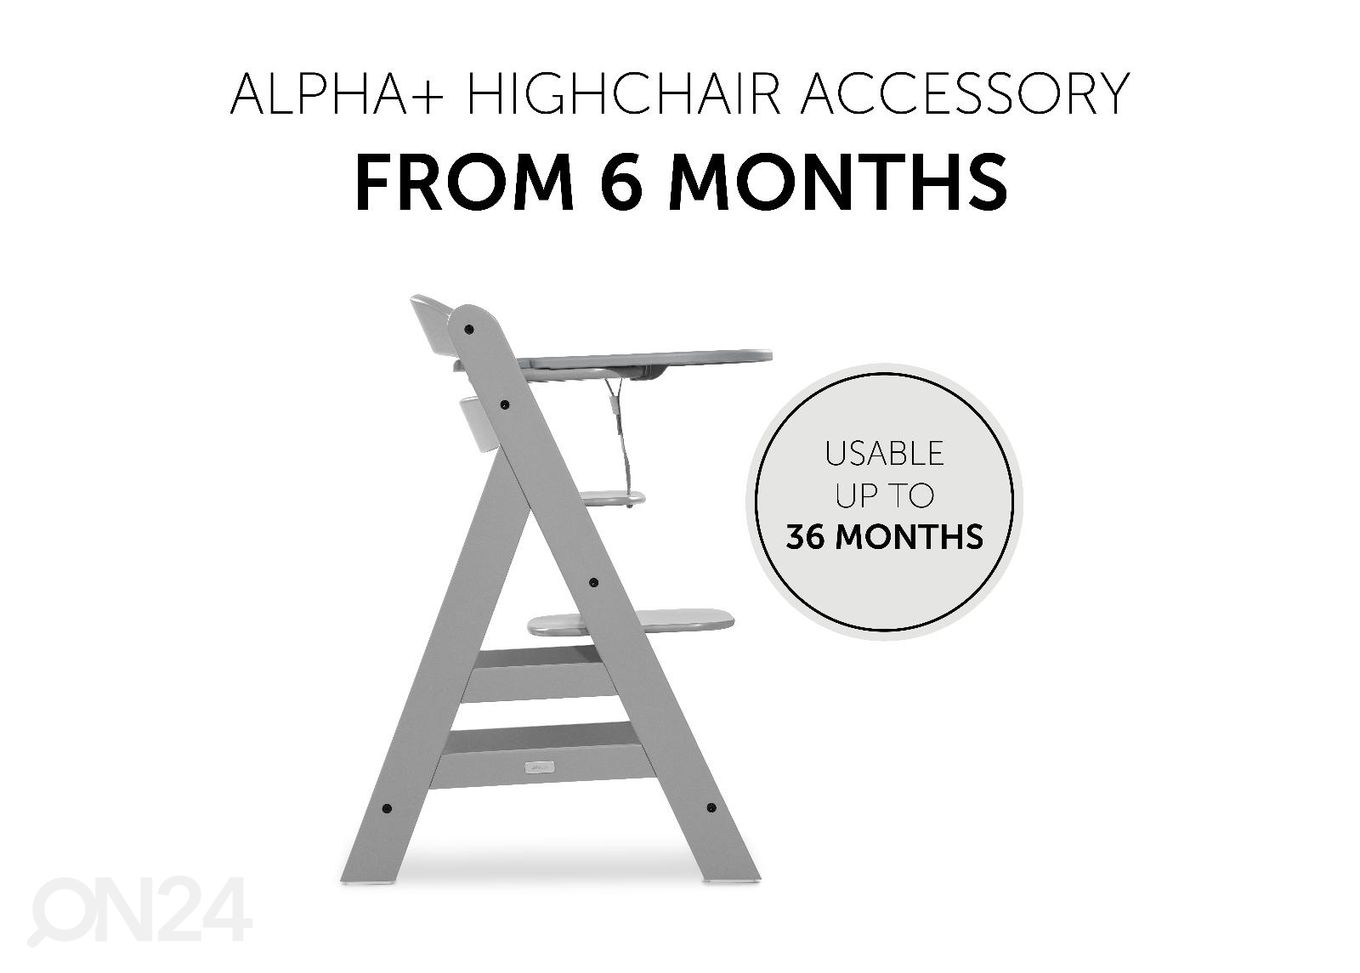 Поднос для стульчика для кормления Hauck Alpha Click Tray увеличить